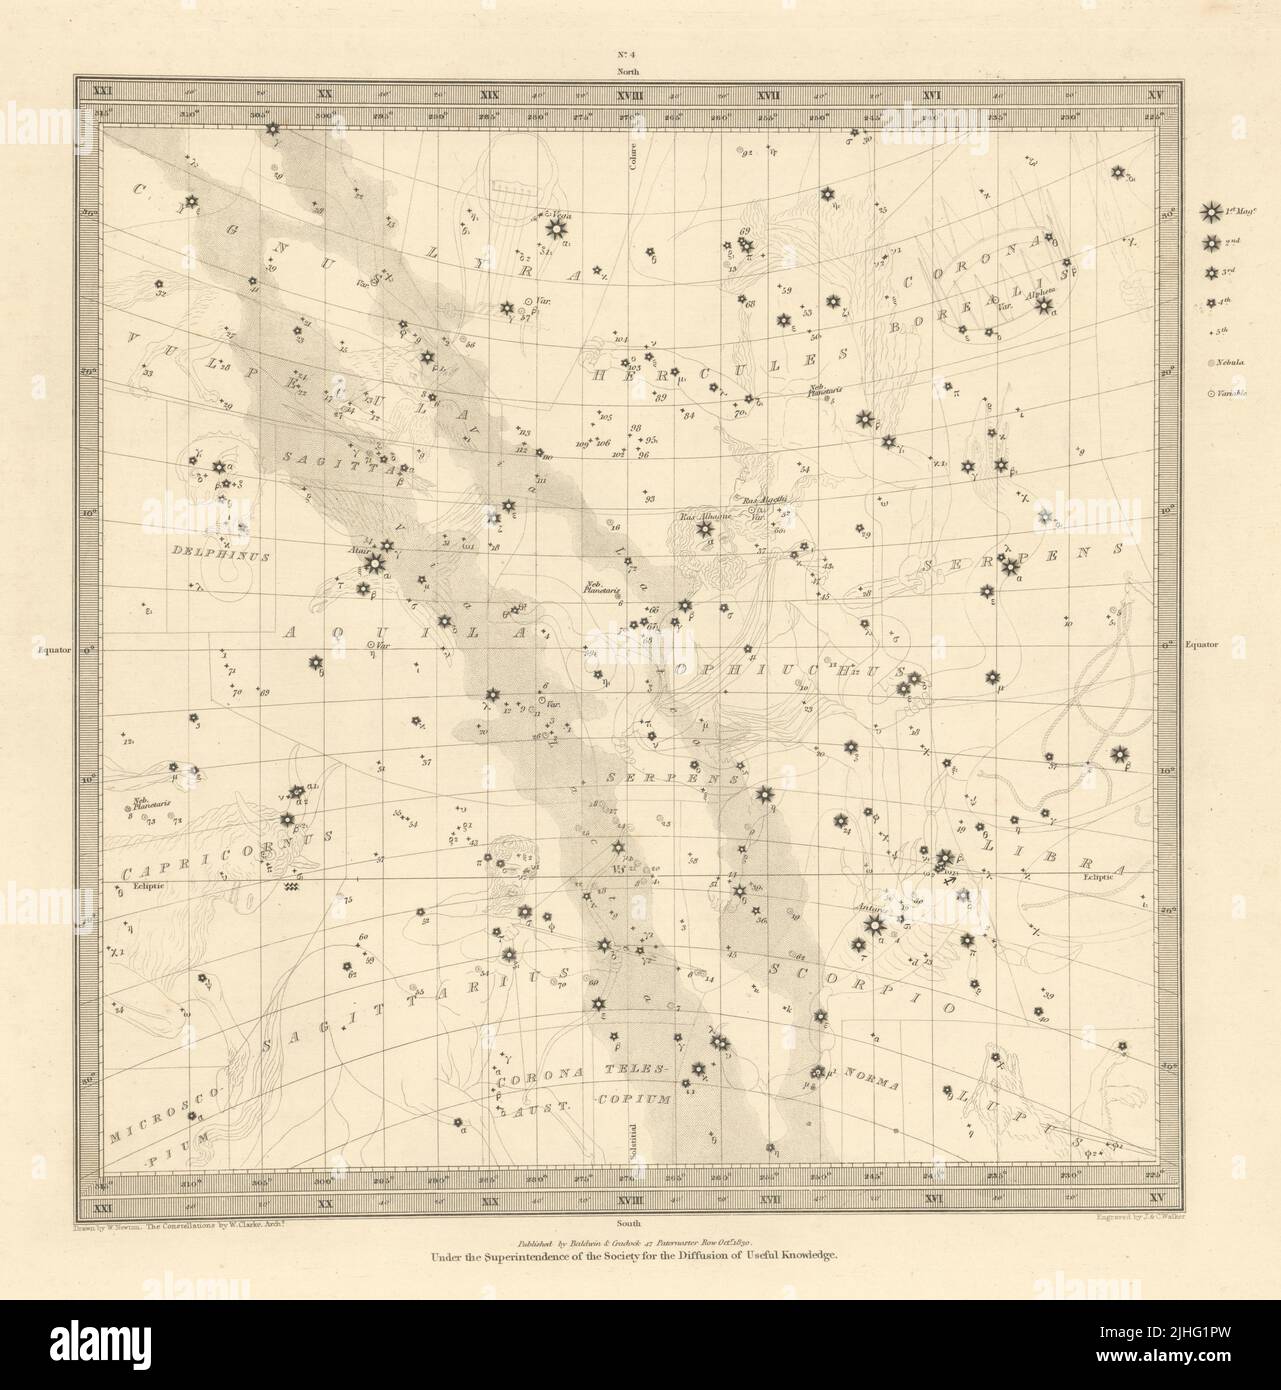 ASTRONOMÍA CELESTIAL. Mapa de estrellas. Gráfico de estrellas. IV Solsticio de invierno. SDUK 1830 Foto de stock